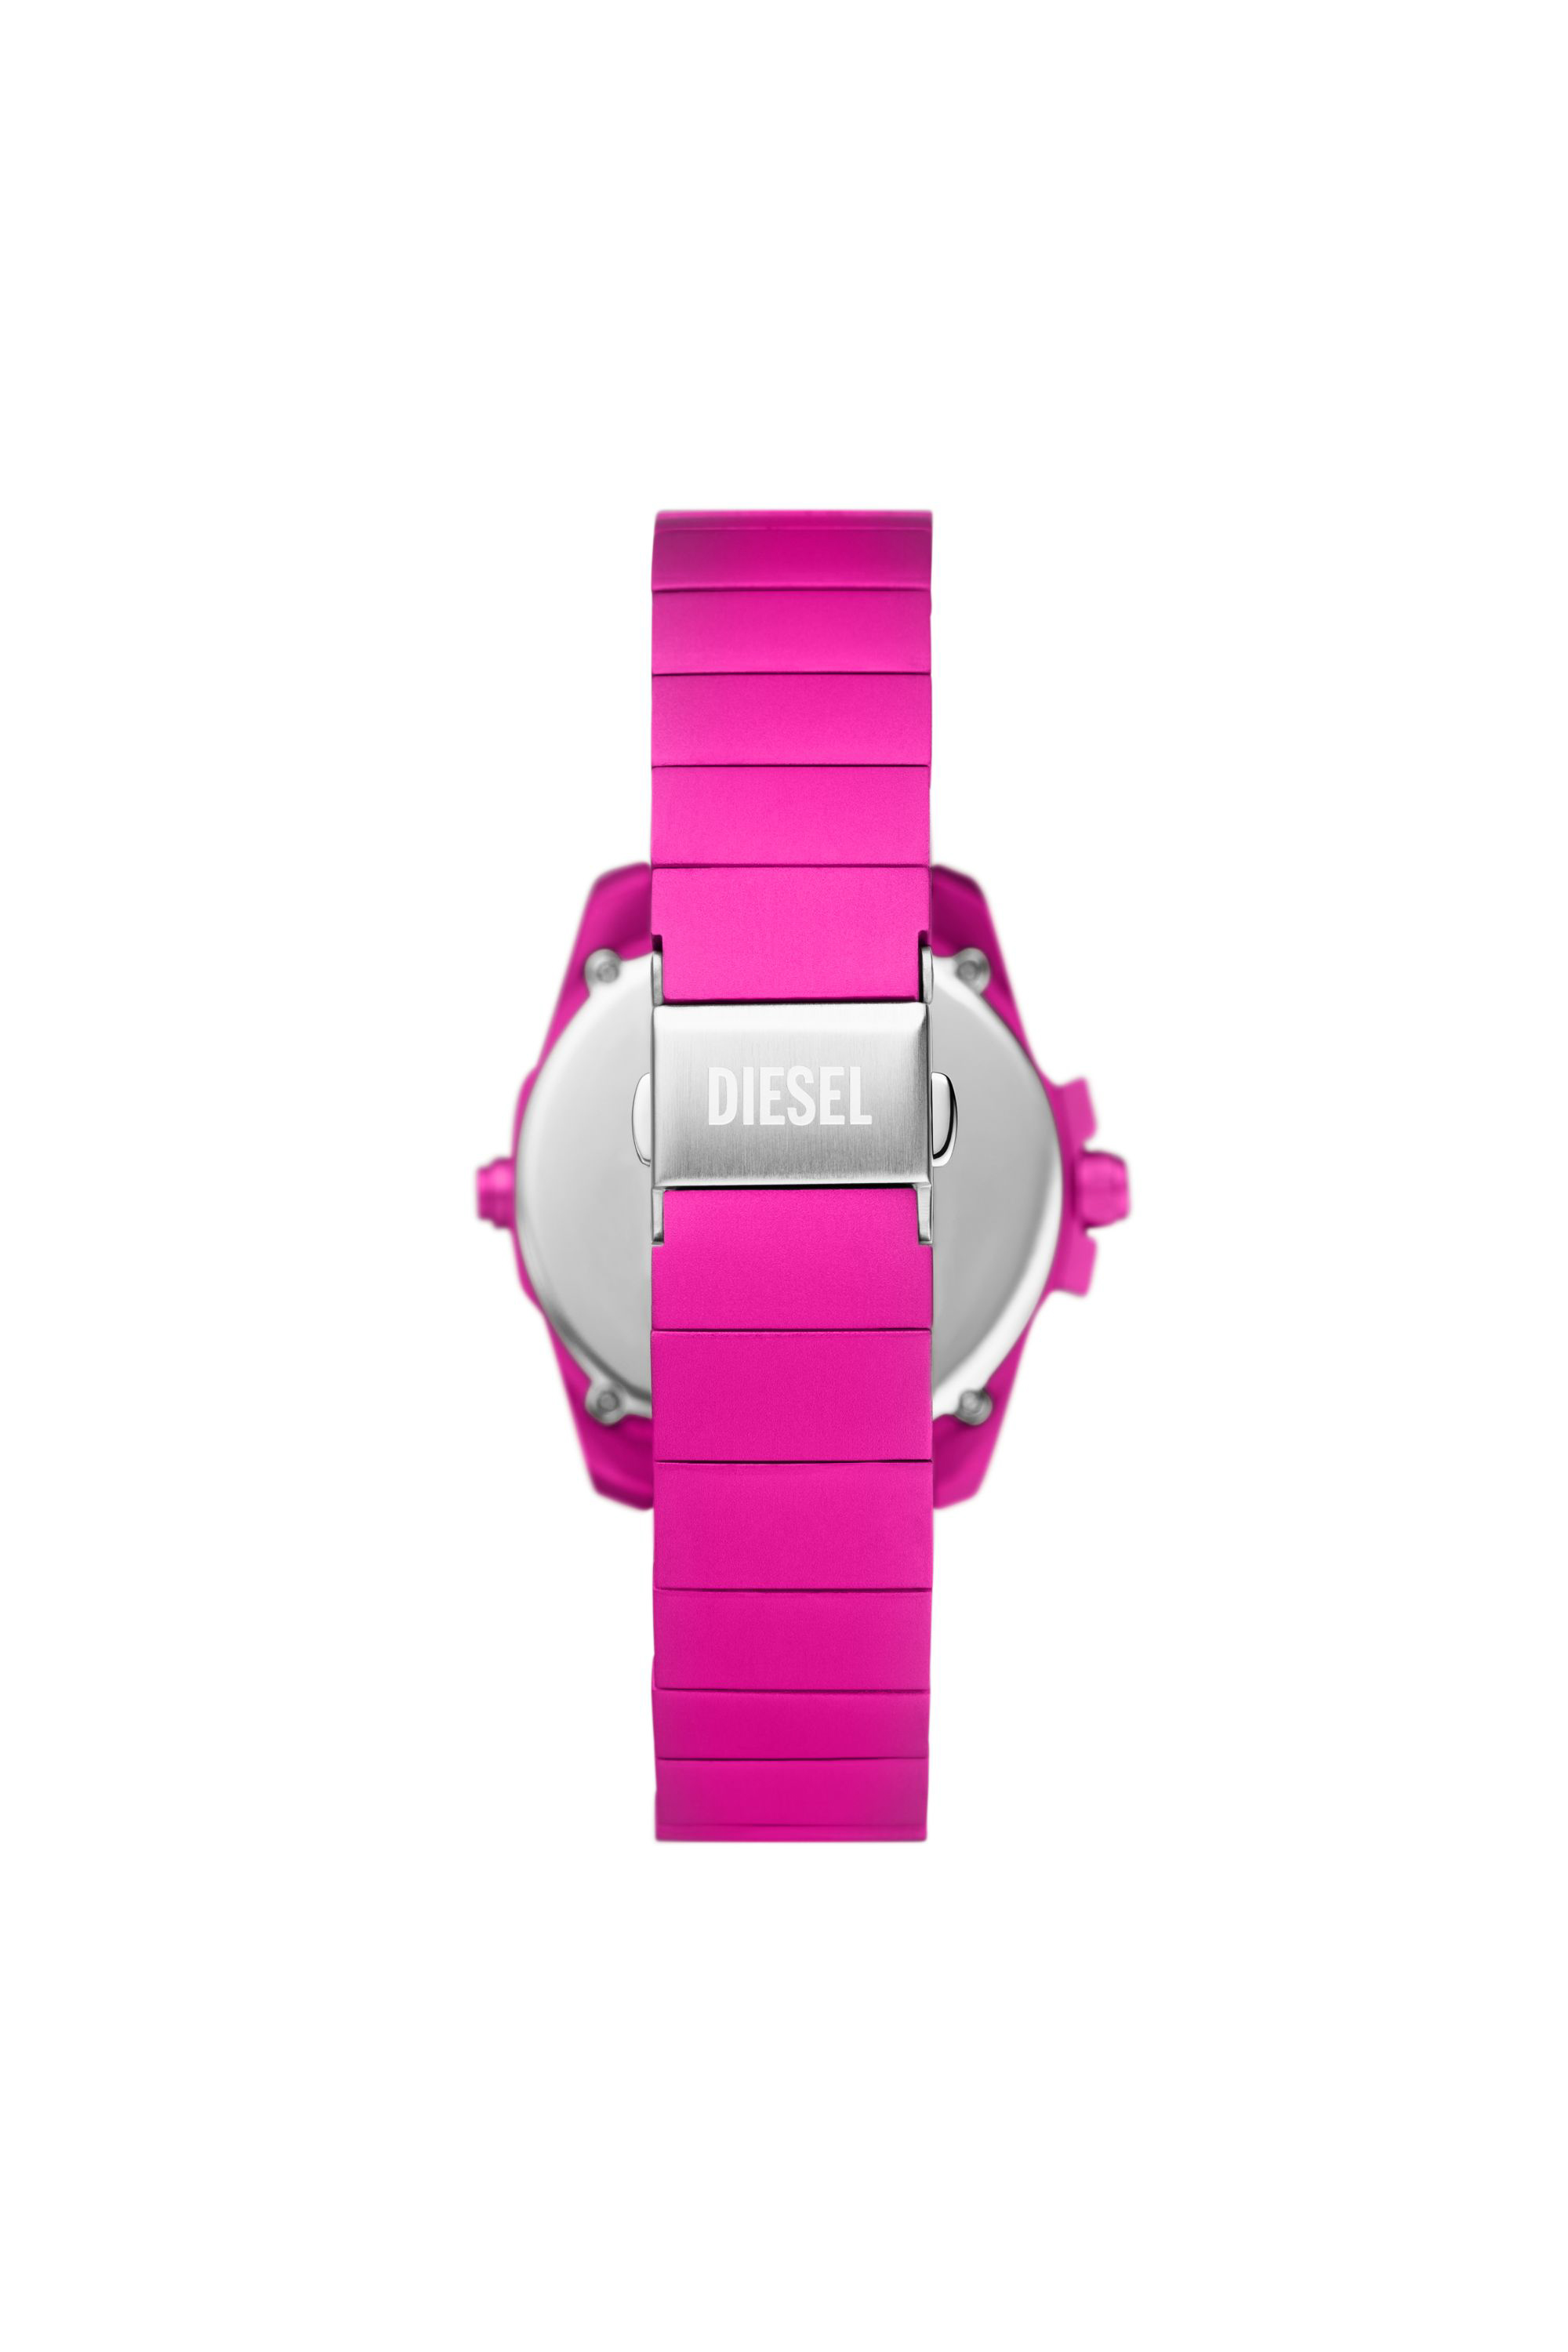 Diesel - DZ2206 WATCH, Male Baby chief digital pink aluminum watch in Pink - Image 2